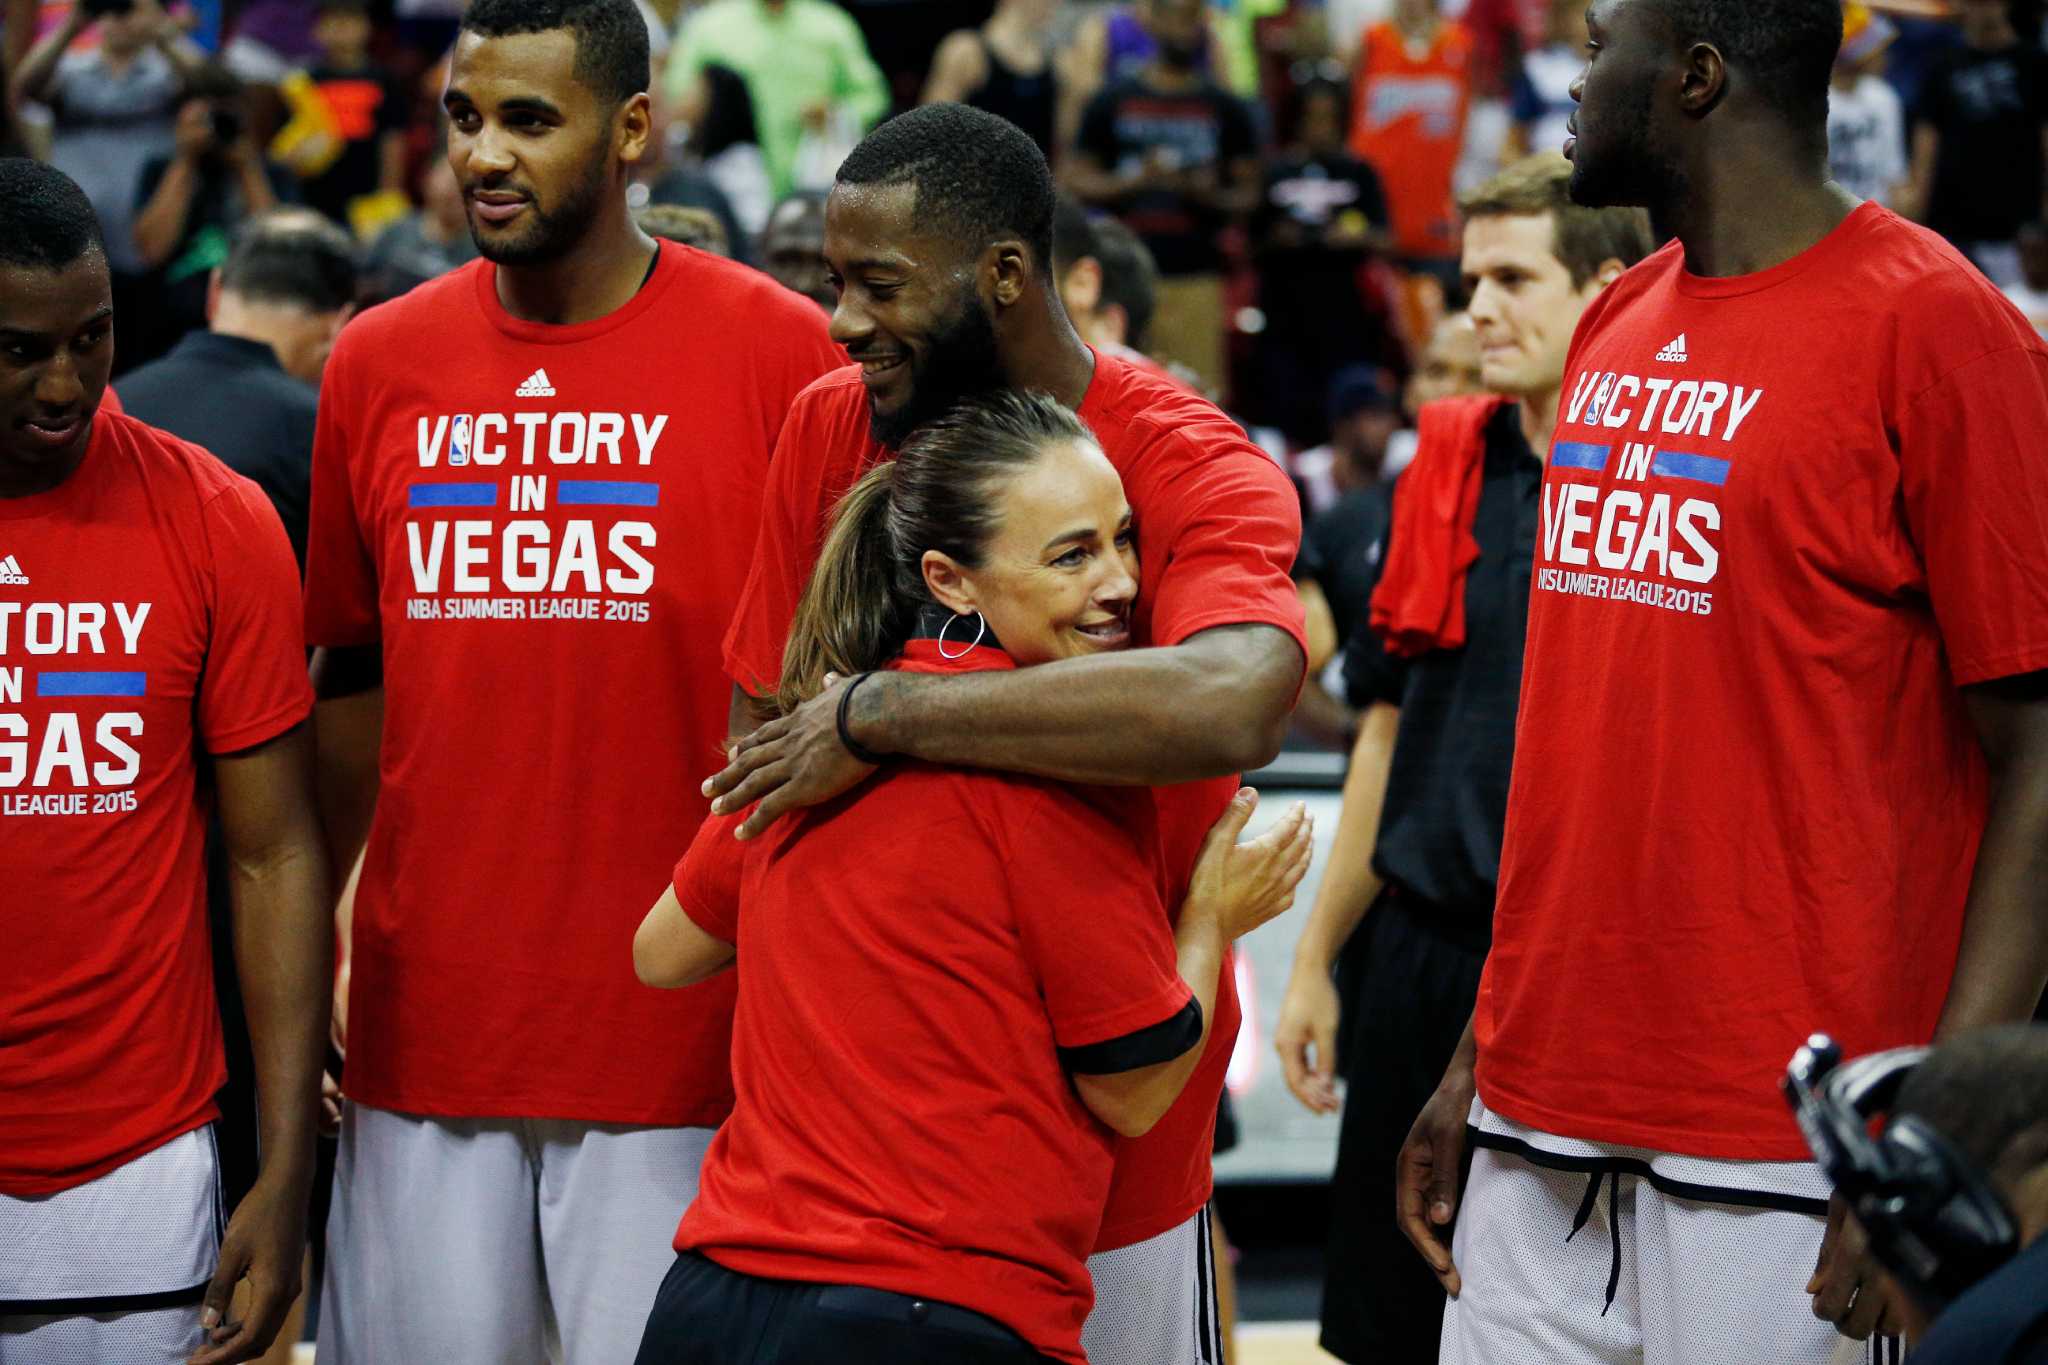 Spurs set to defend NBA Summer League title in Las Vegas